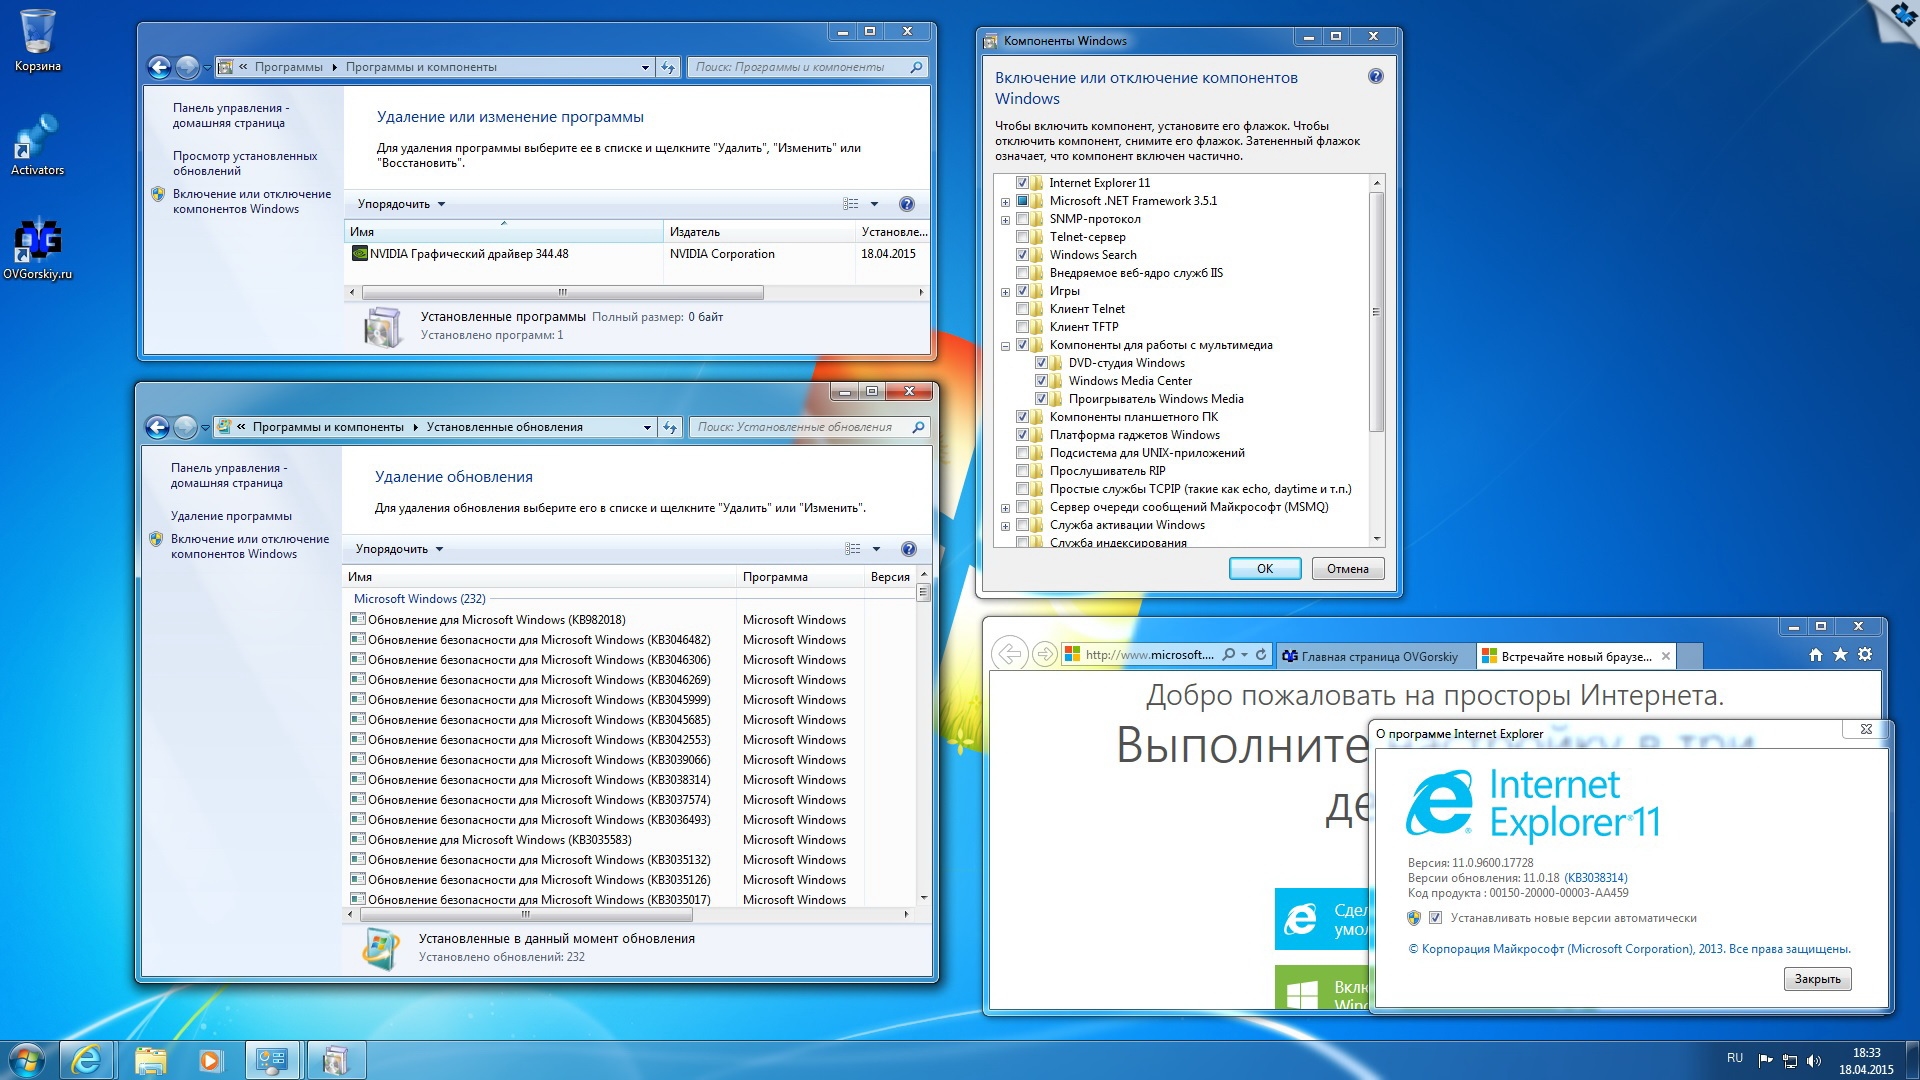 Виндовс 7 зверь. Windows 7 максимальная x64 Key. Windows 7 Ultimate sp1 x64 OVGORSKIY. Ключ продукта для Windows 7 Ultimate x64. Windows 7 максимальная языковые обновления.